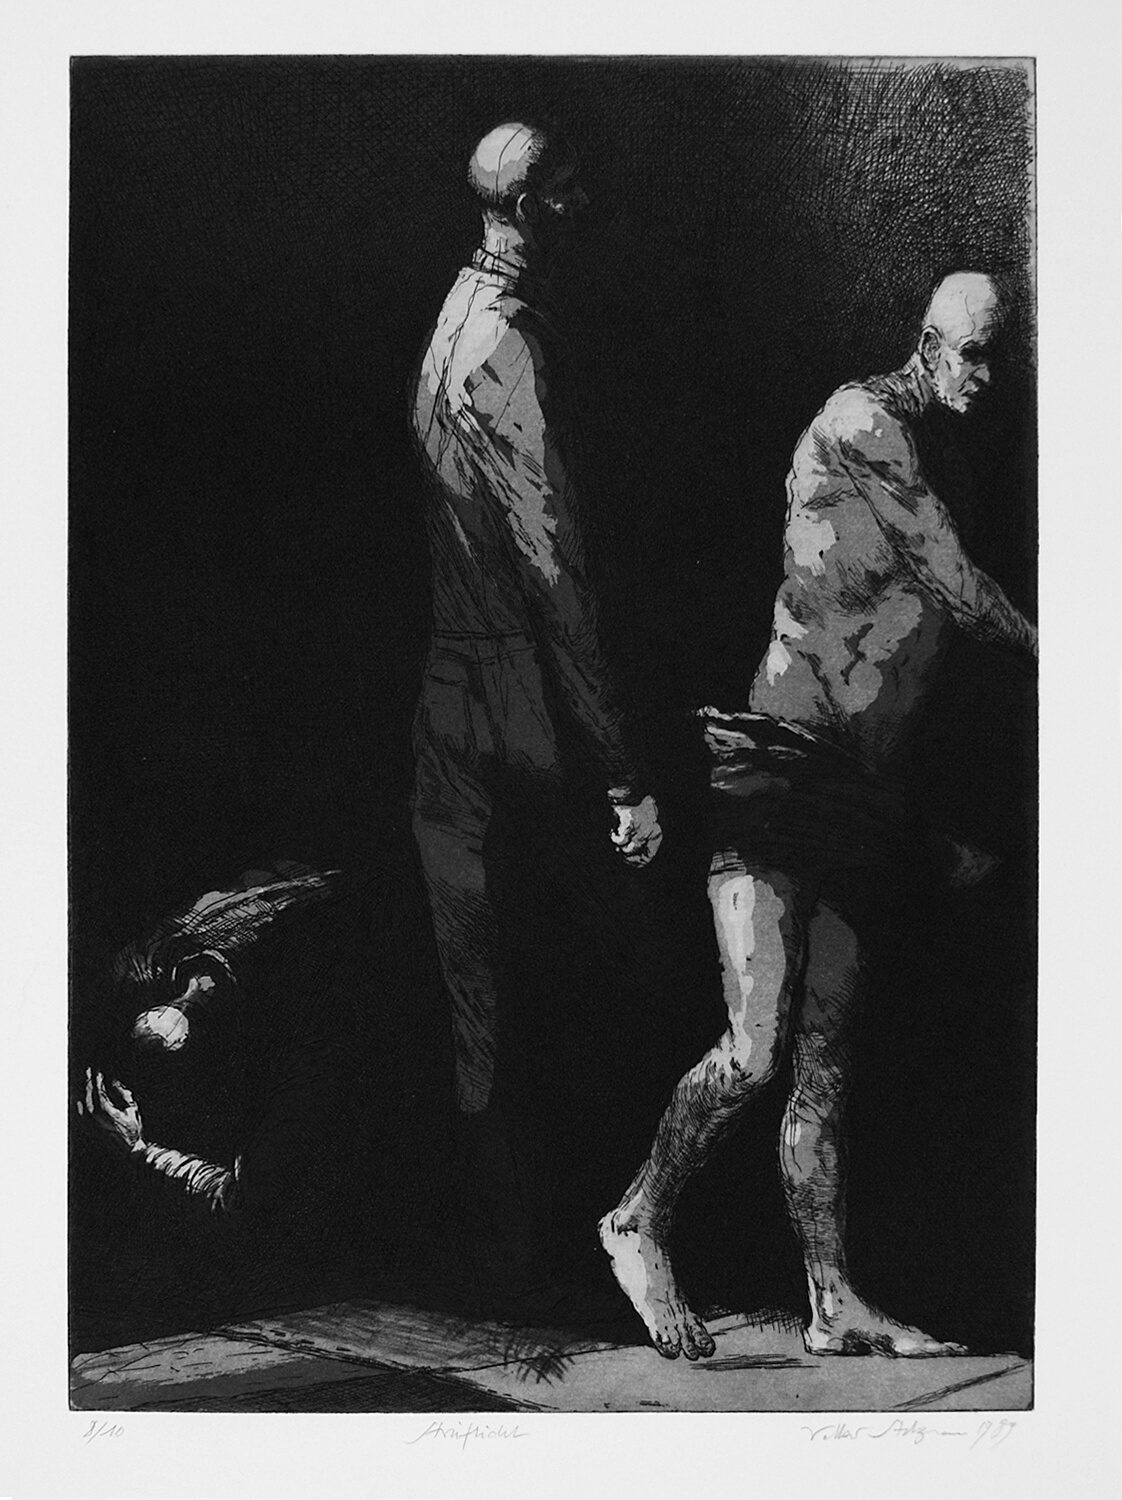 Volker Stelzmann, Streiflicht, 1989, Radierung, Auflage: 10, Bild: 39,8 x 28,8 cm, Blatt: 65 x 50 cm